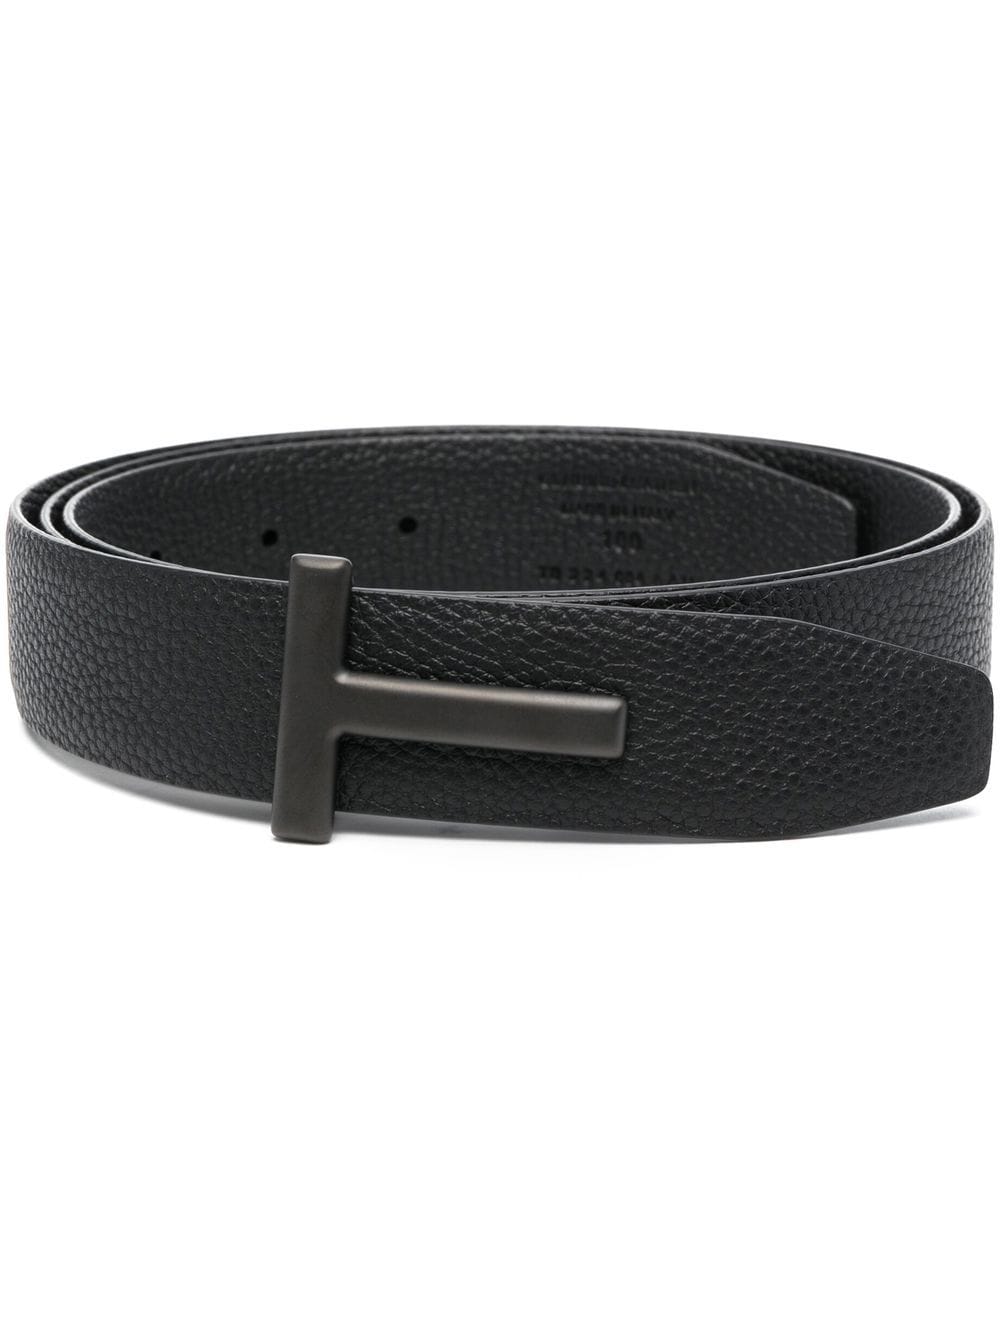 TOM FORD logo buckle leather belt - Black von TOM FORD